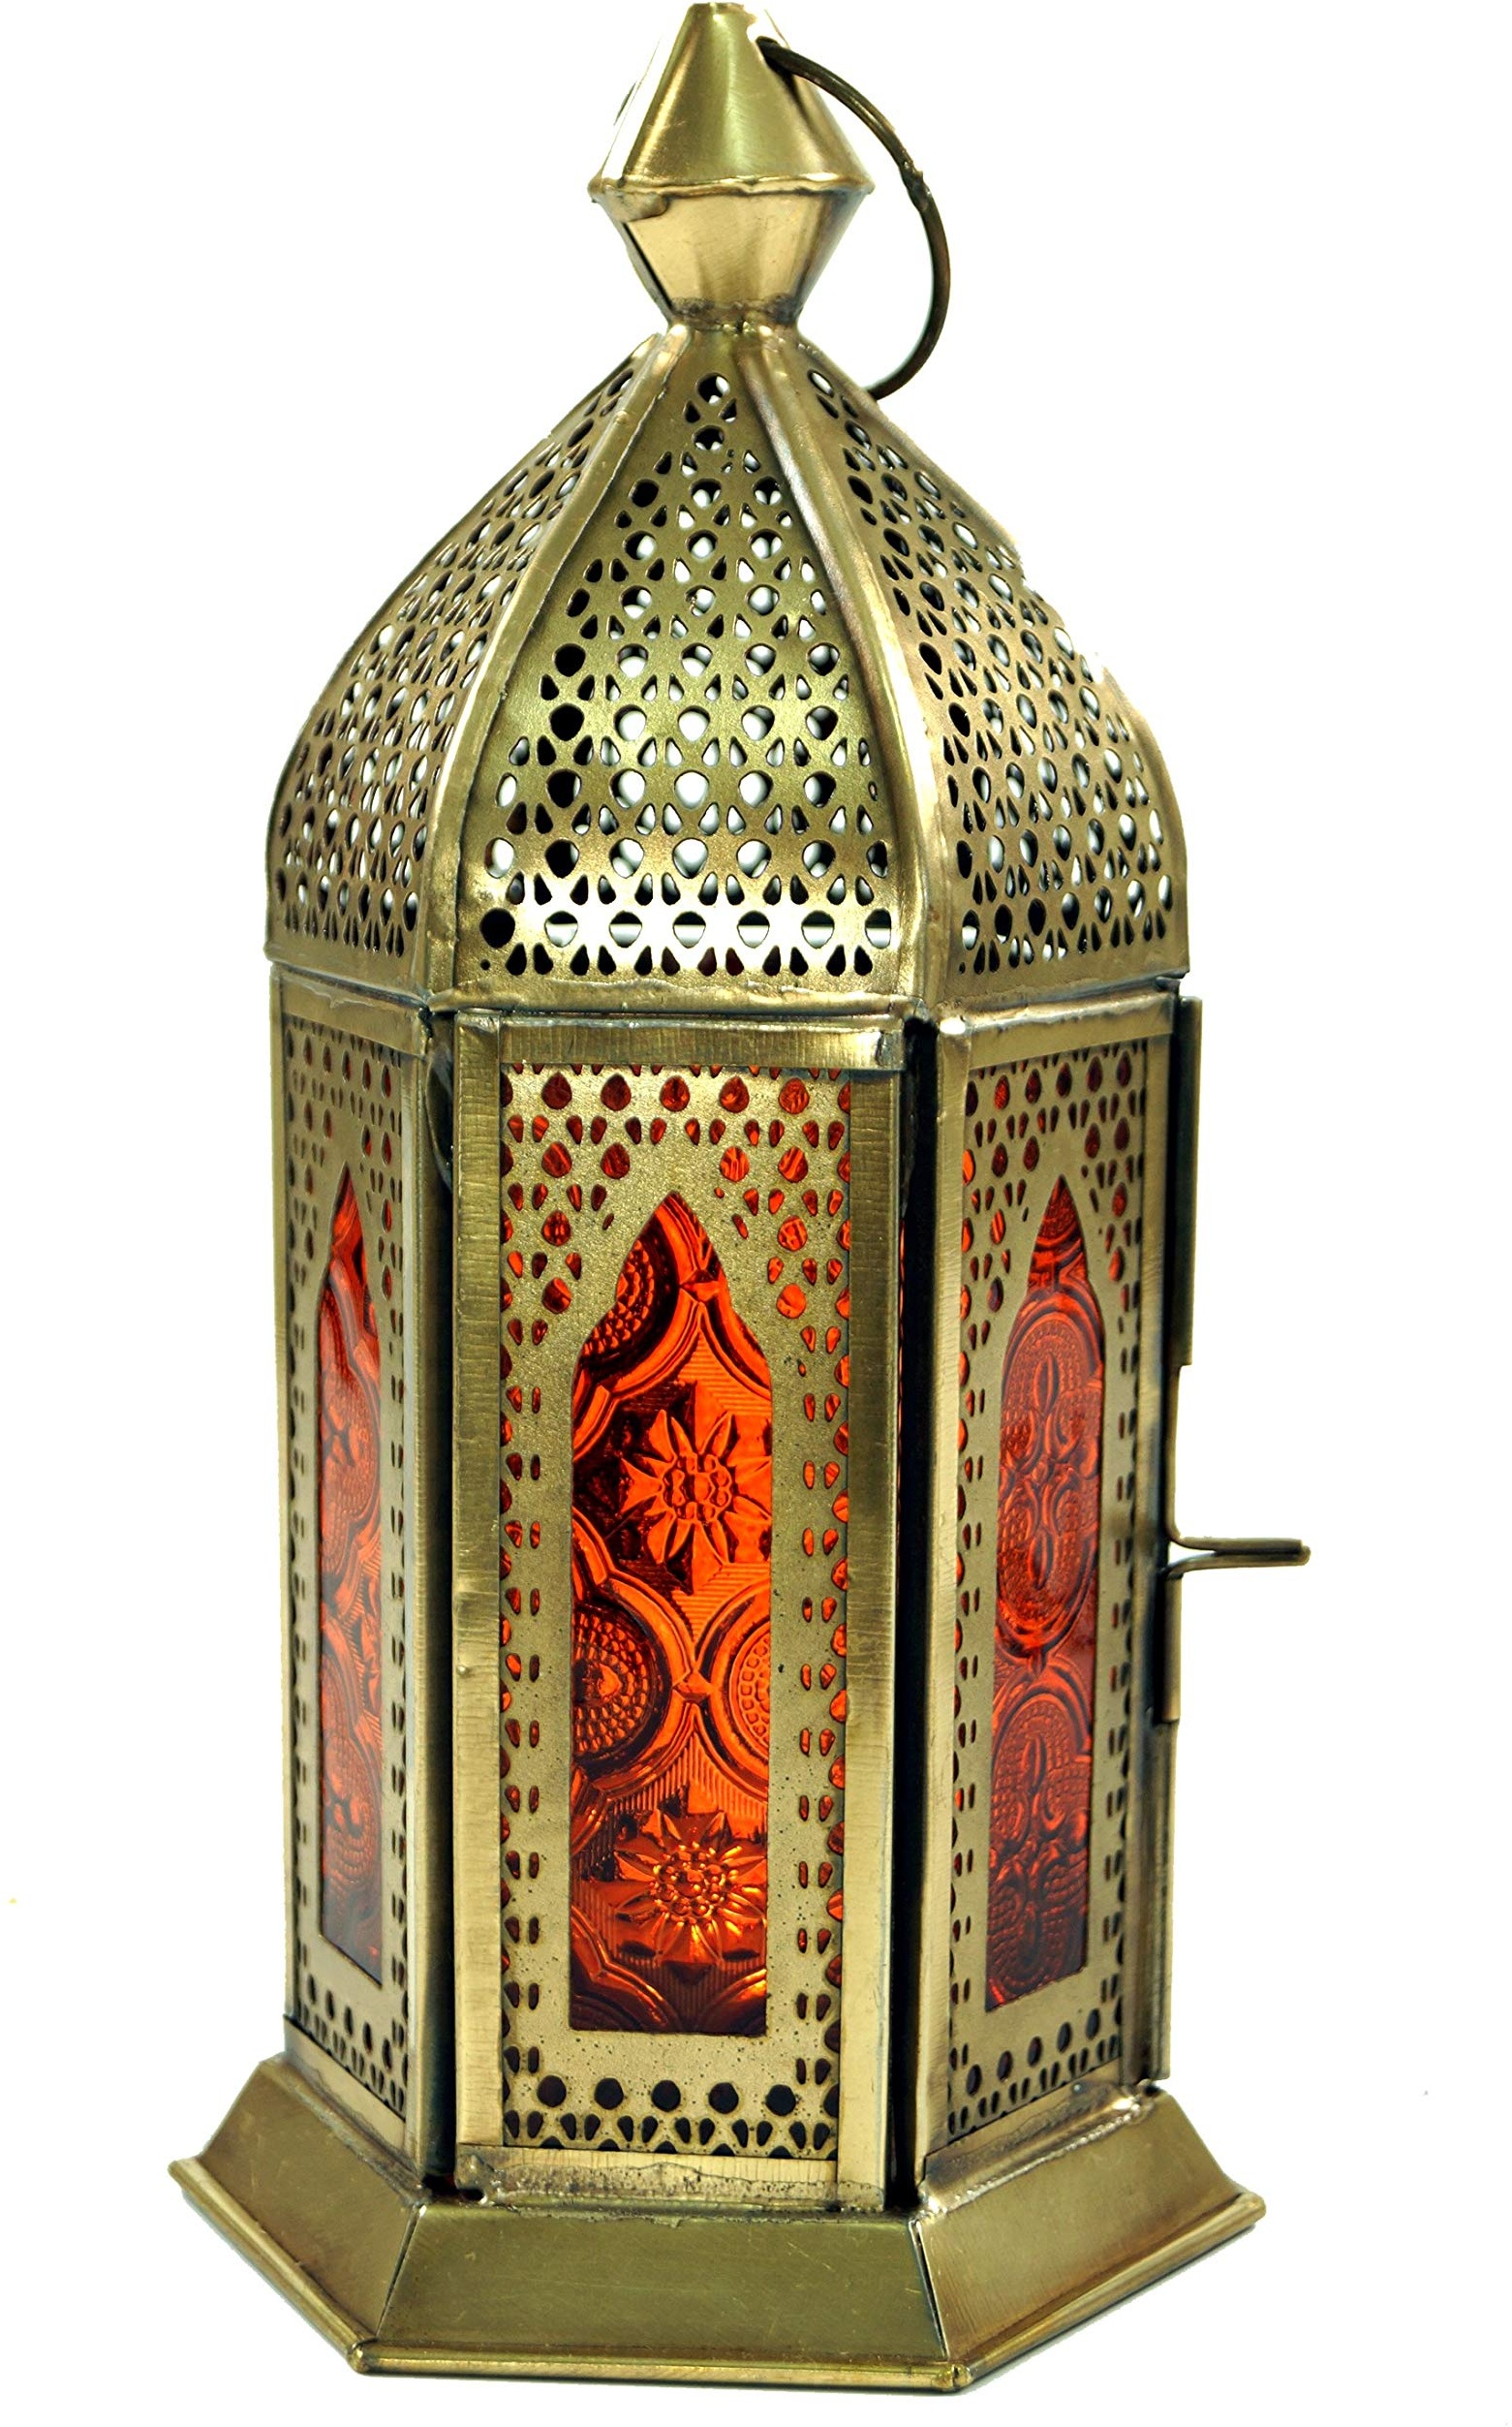 GURU SHOP Orientalische Metall/Glas Laterne in Marrokanischem Design, Windlicht, Orange, Farbe: Orange, 21x9,5x9,5 cm, Orientalische Laternen